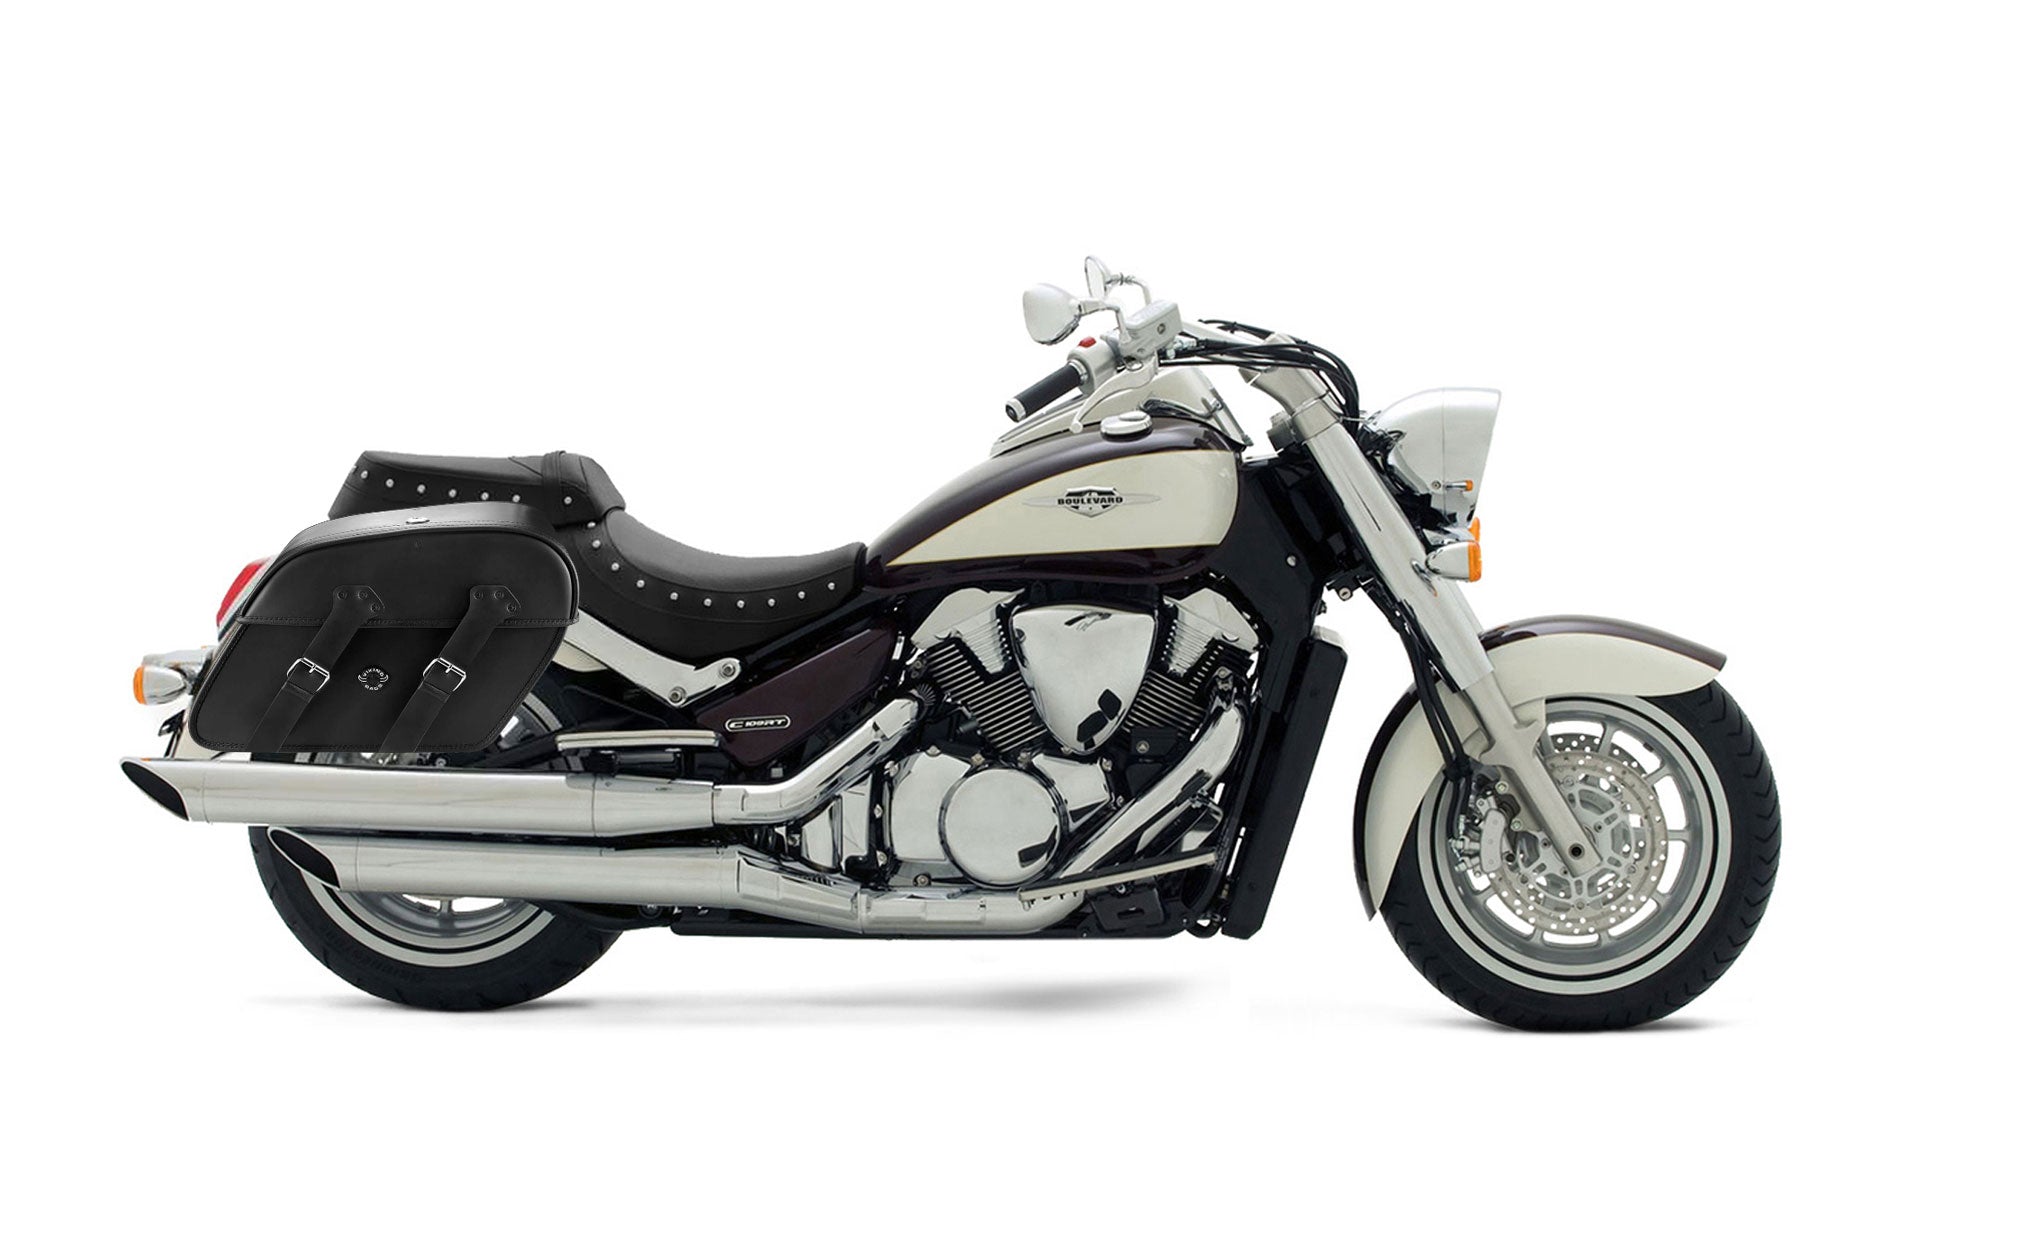 Viking Raven Extra Large Suzuki Boulevard C109 Leather Motorcycle Saddlebags on Bike Photo @expand